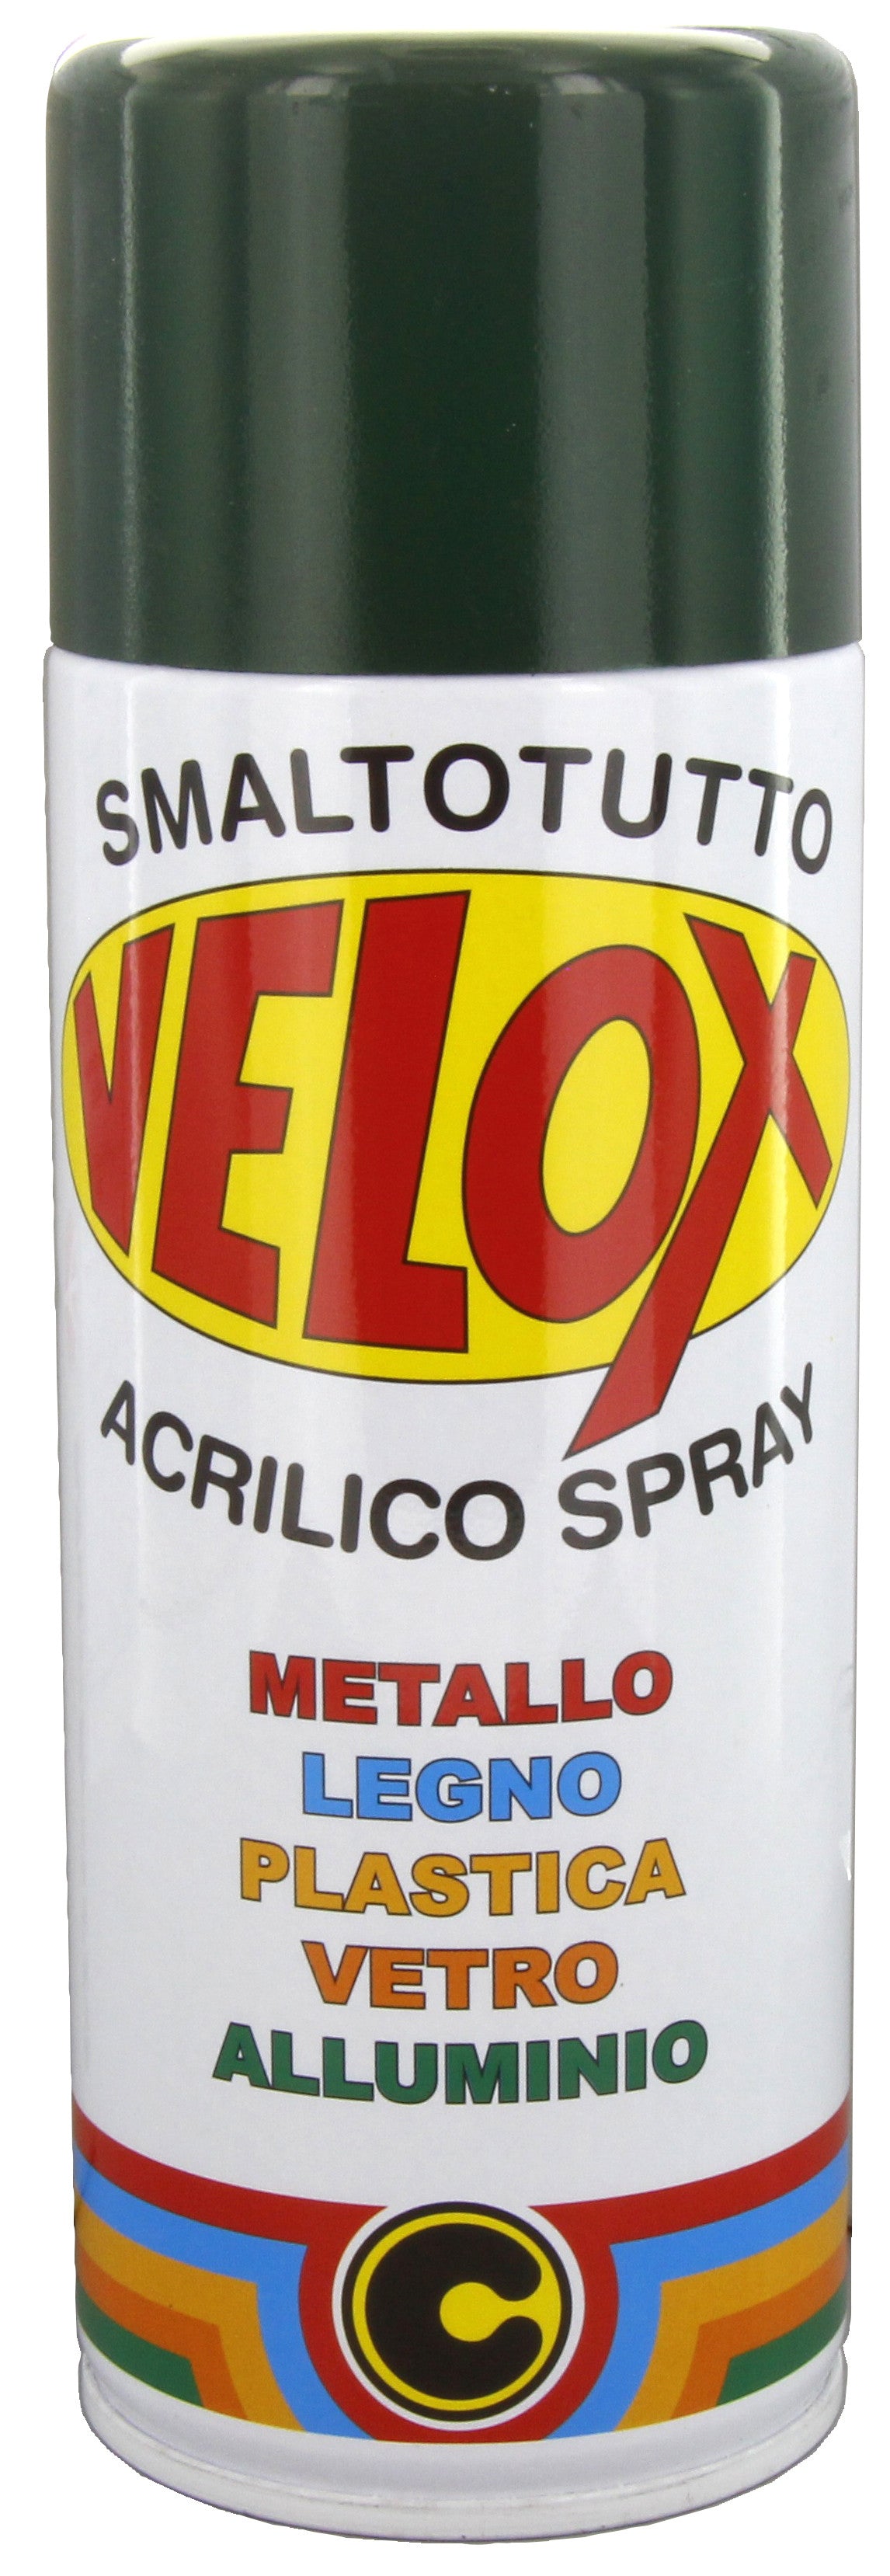 Velox spray acrilico verde muschio ral 6005 ITAL G.E.T.E.